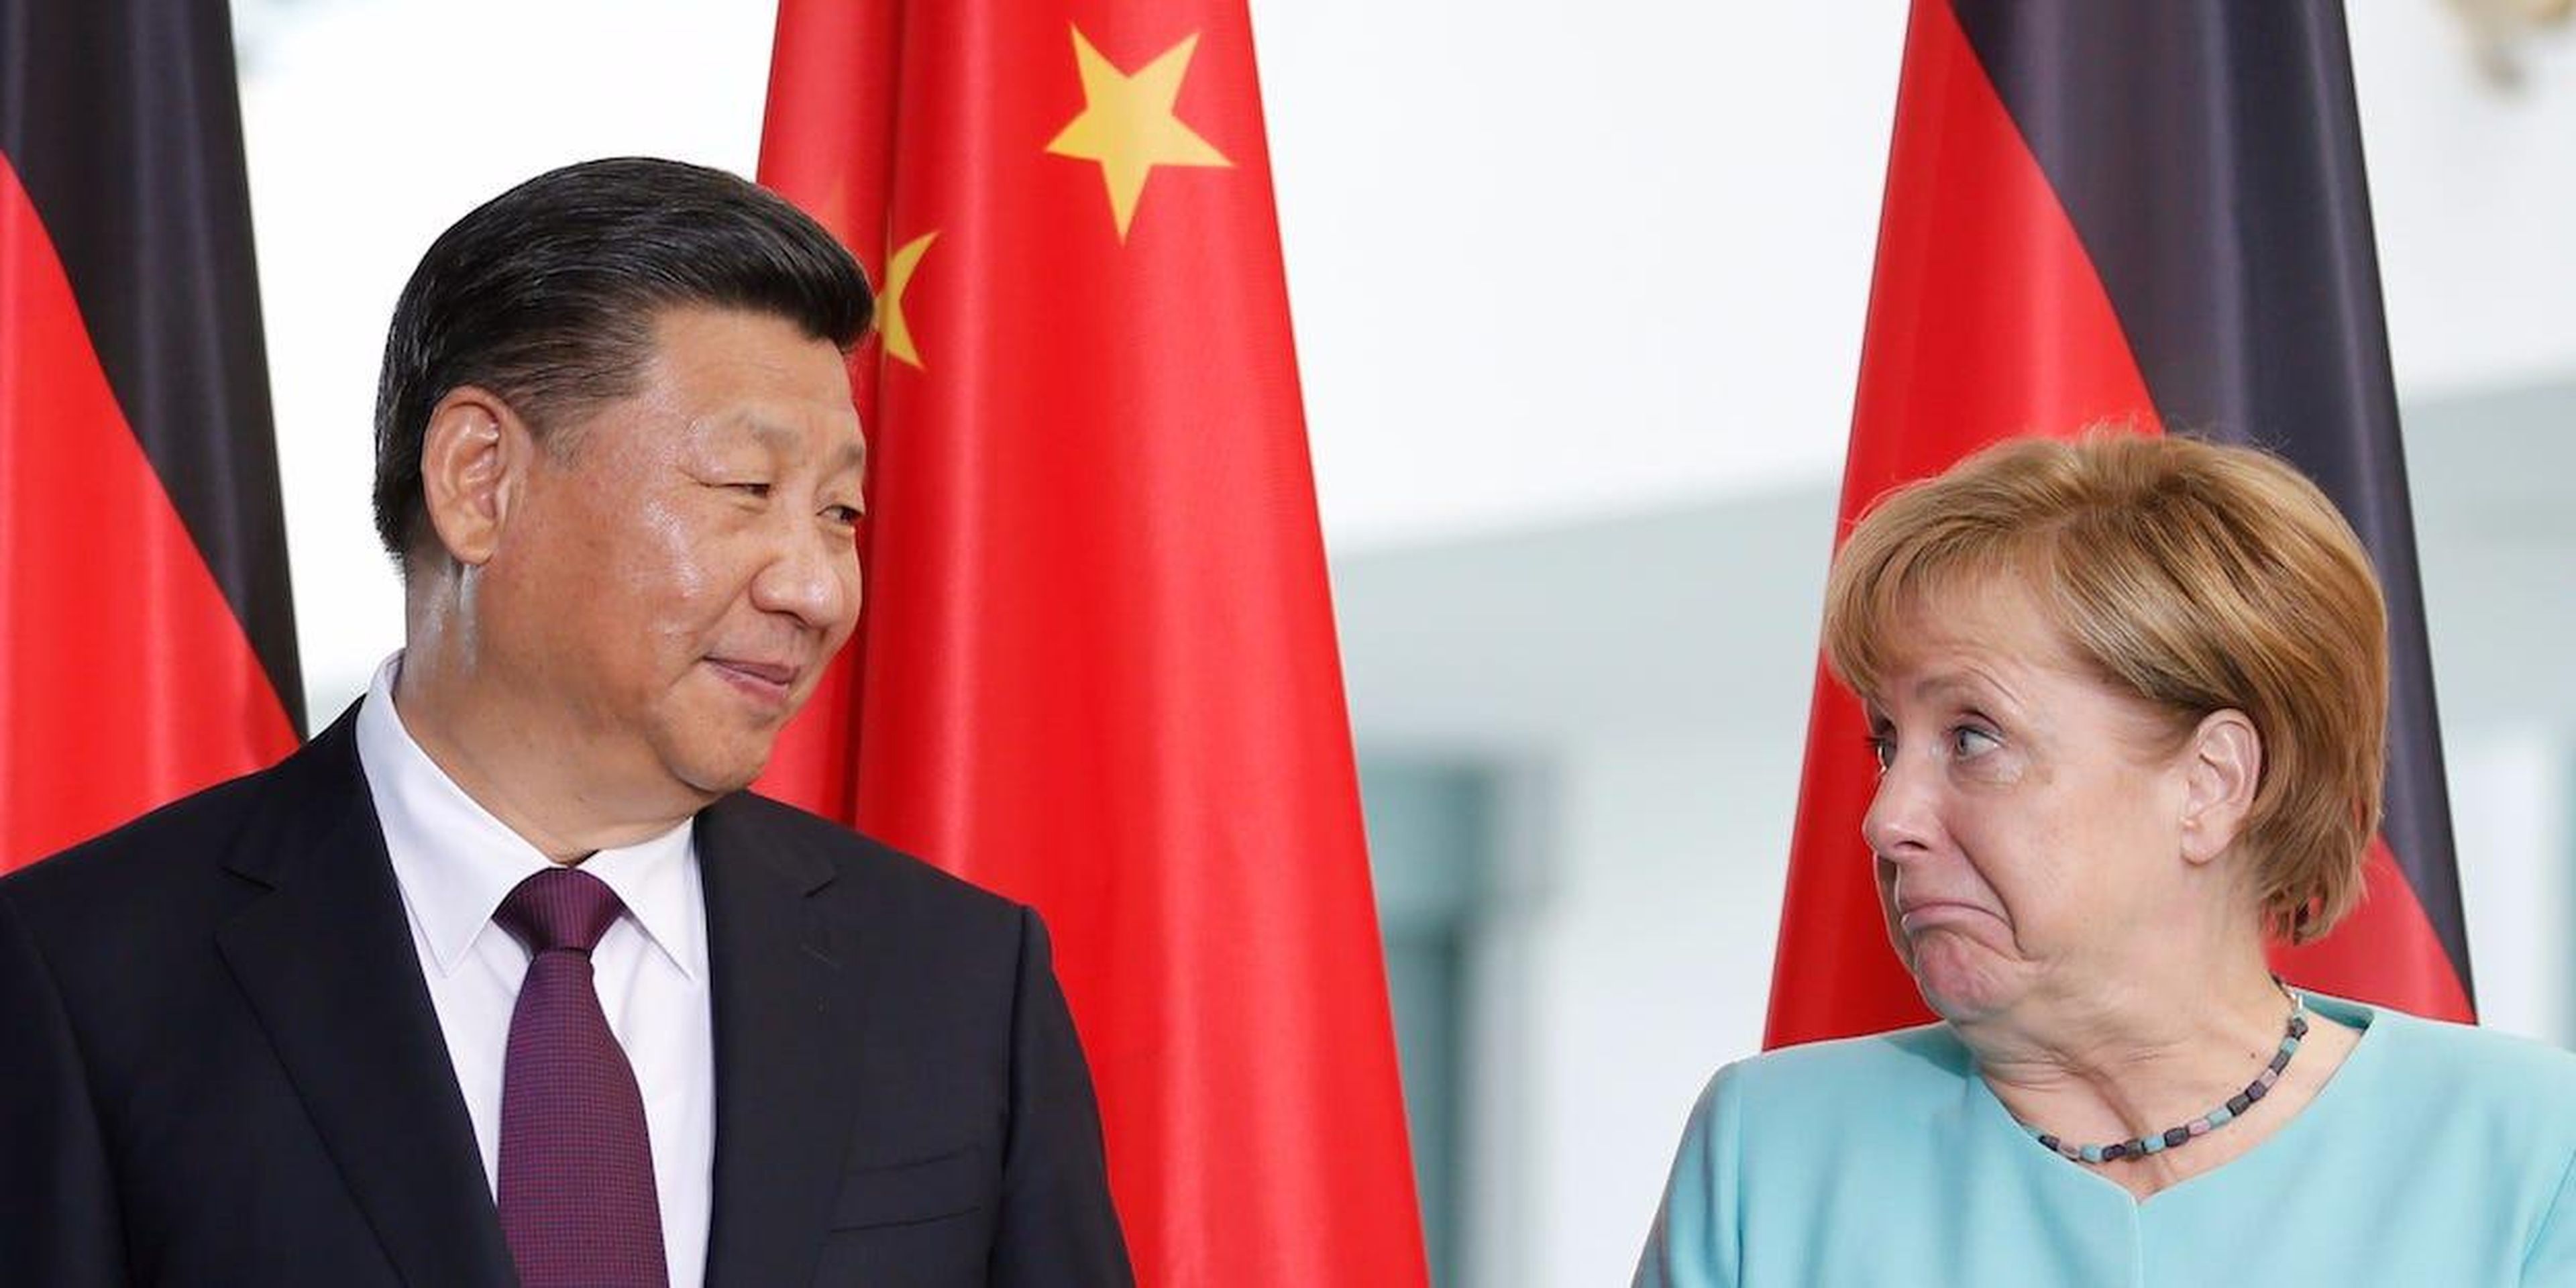 La canciller alemana, Angela Merkel, y el presidente chino, Xi Jinping, asisten a una firma de contrato en la Cancillería de Berlín, Alemania, el 5 de julio de 2017.